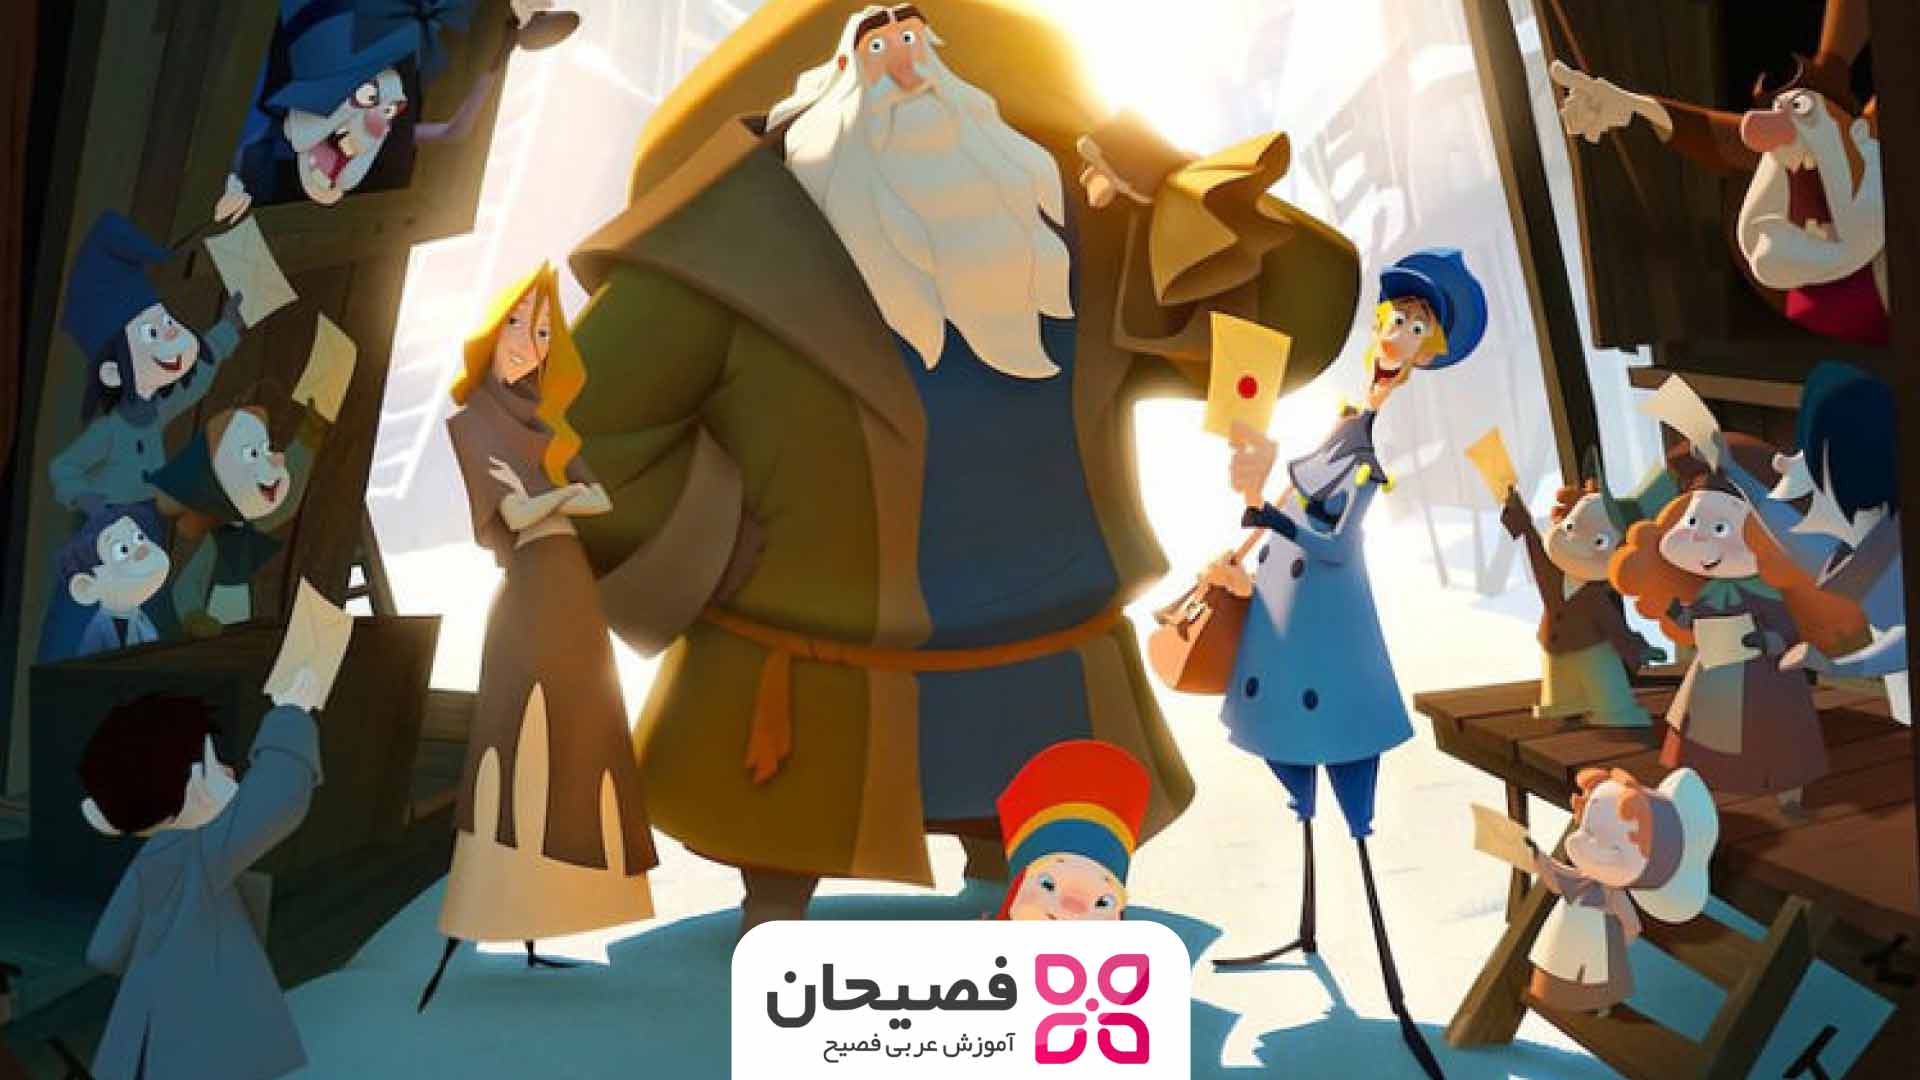 دانلود رایگان انیمیشن عربی کلاوس